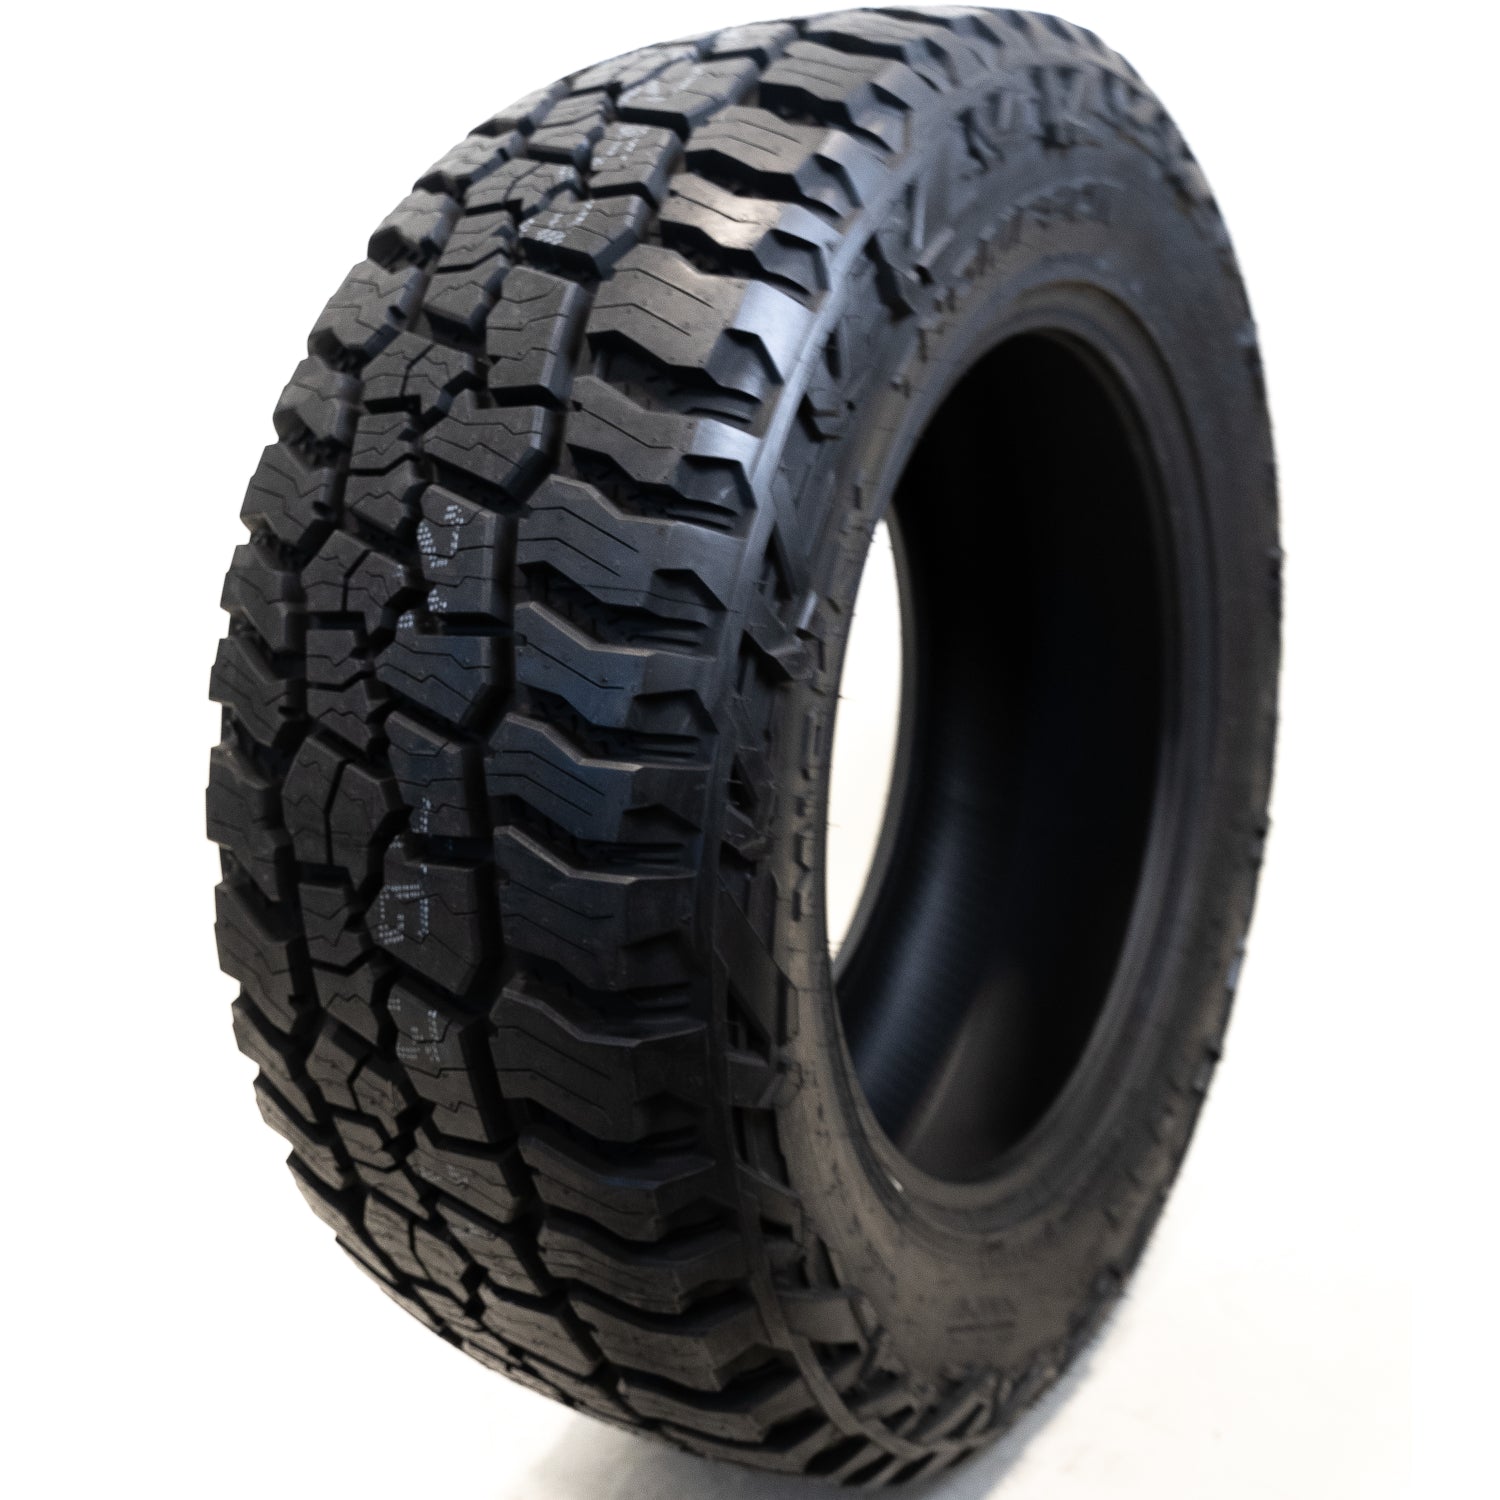 MICKEY THOMPSON BAJA BOSS A/T 265/65R18 (31.5X10.4R 18) Tires